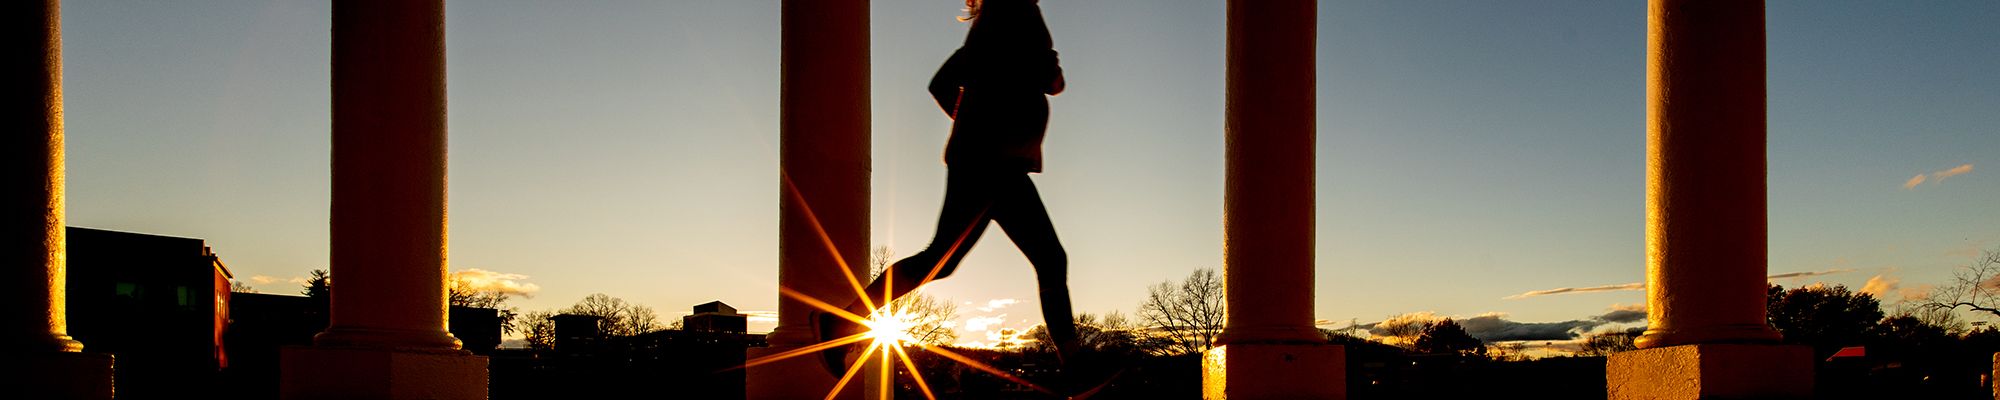 girl running on grounds at sunrise